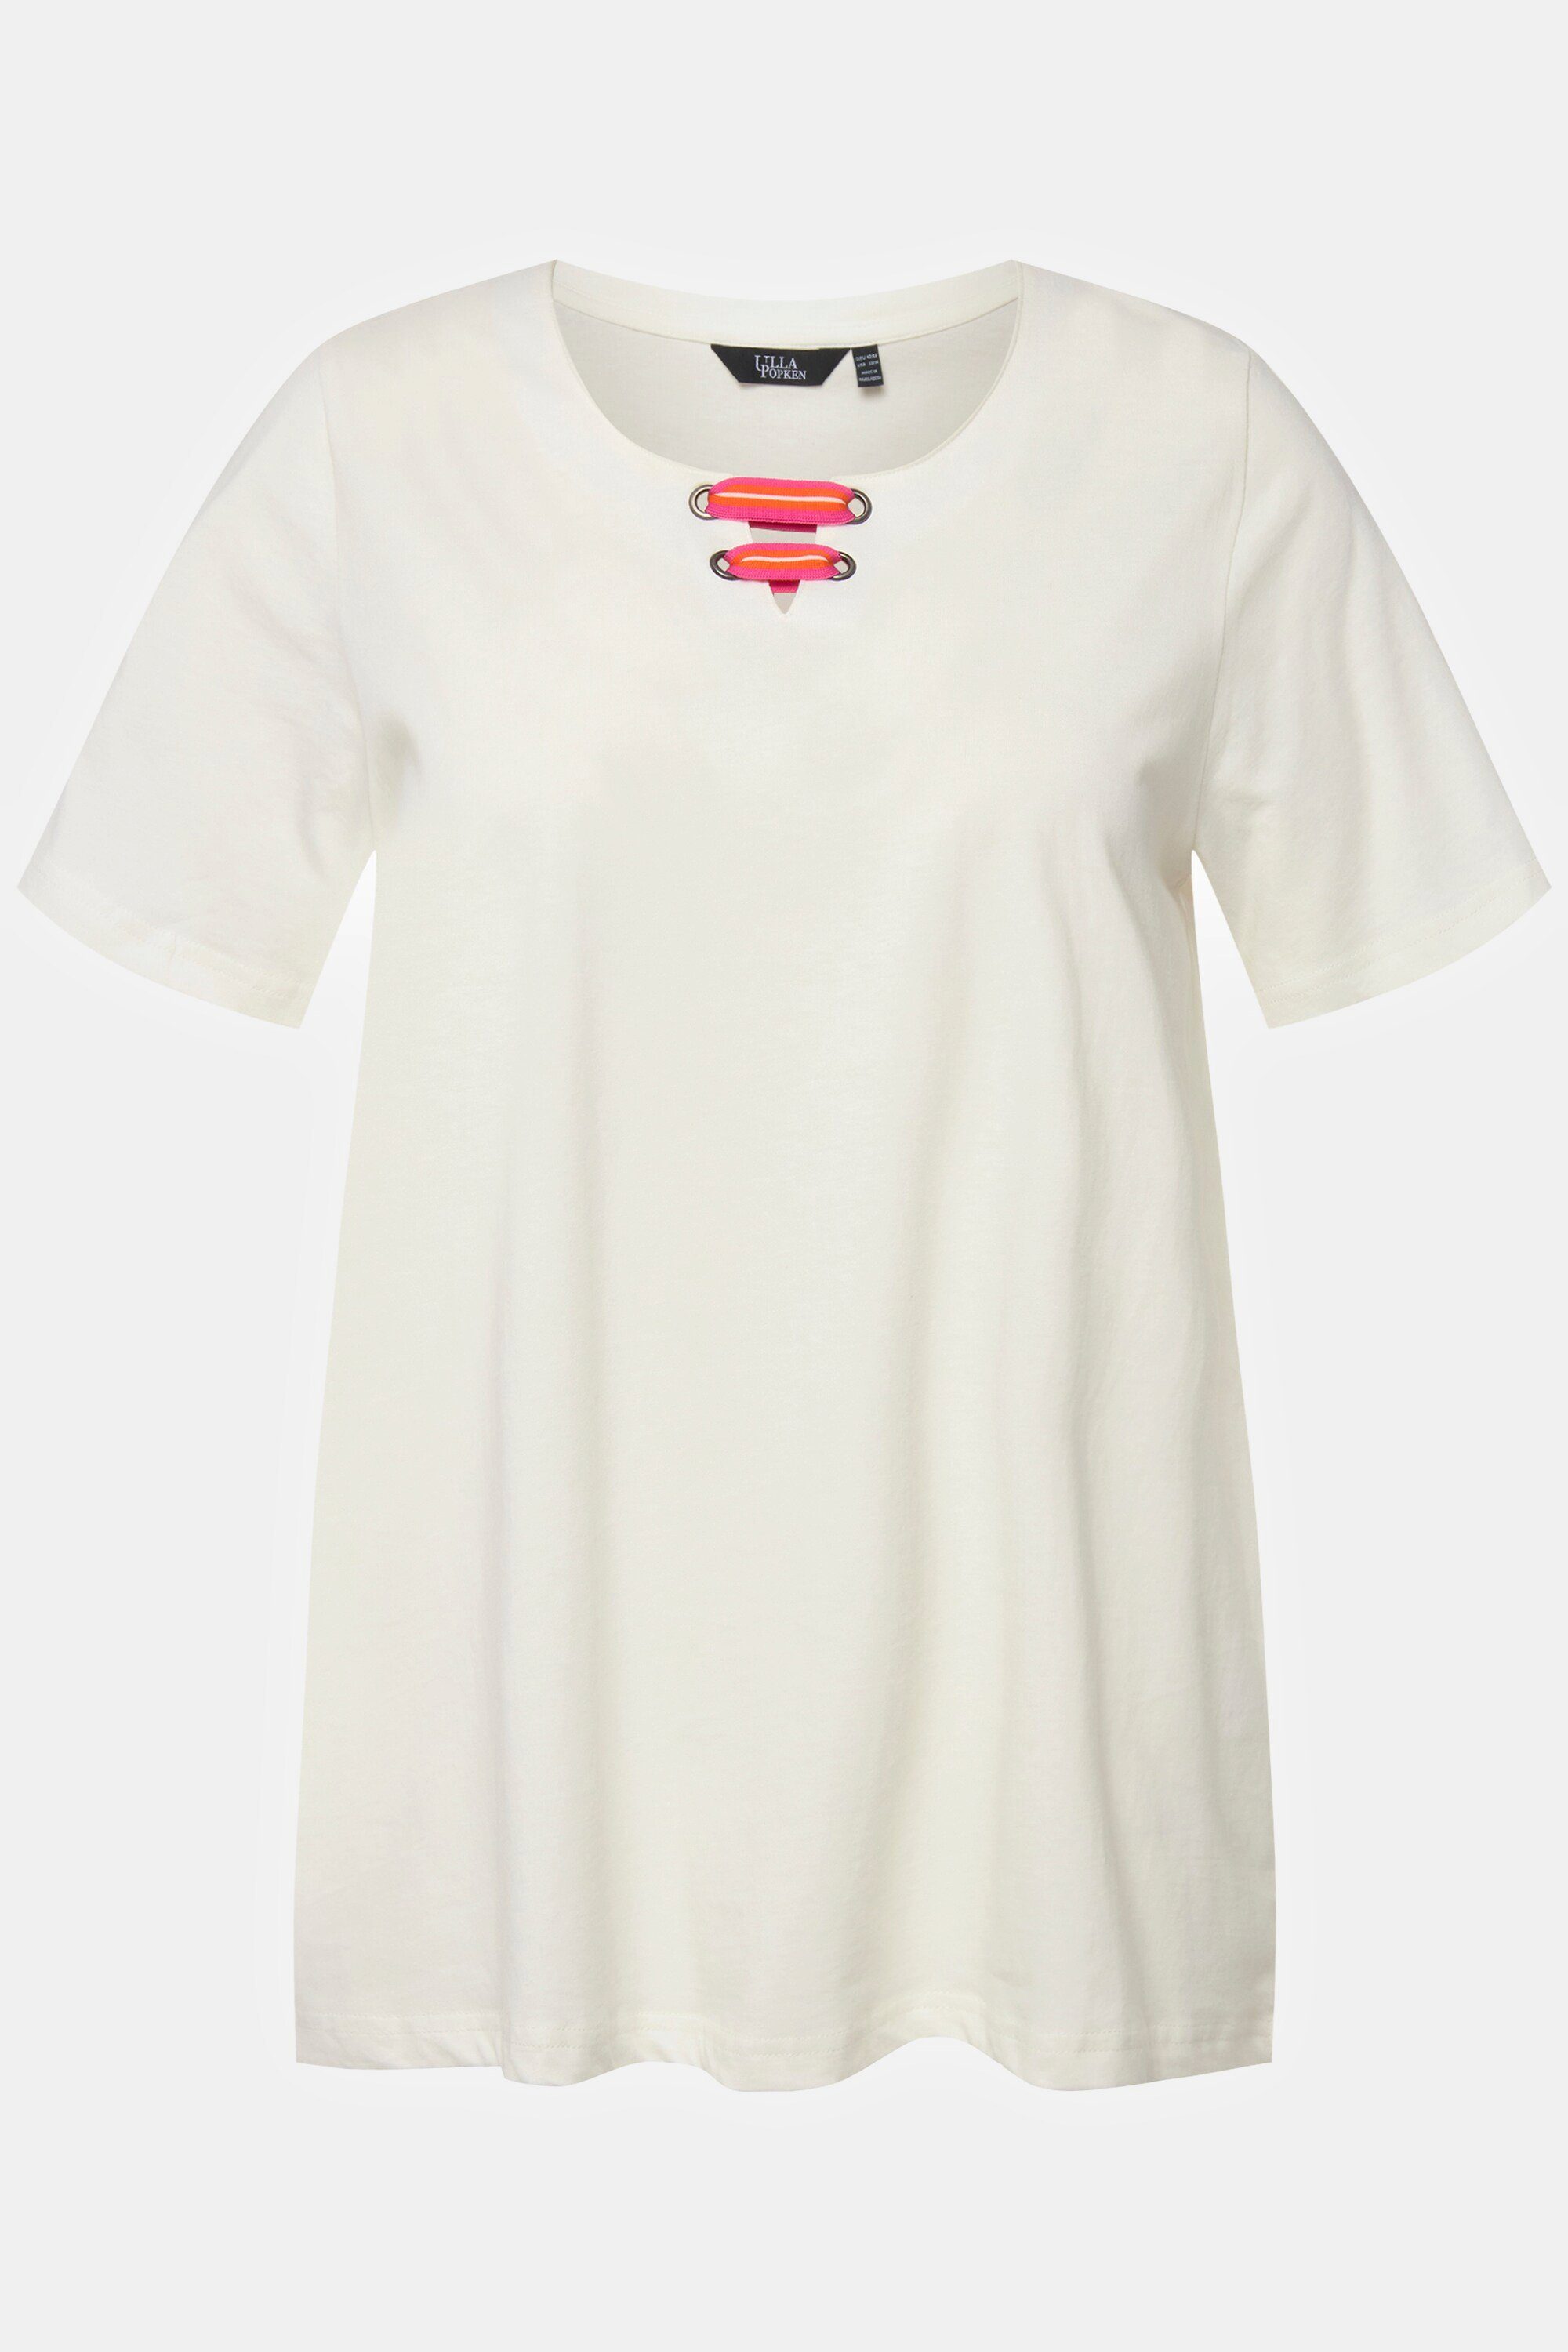 T-Shirt A-Linie offwhite Popken Tunika-Ausschnitt Rundhalsshirt Ulla Flügel-Halbarm